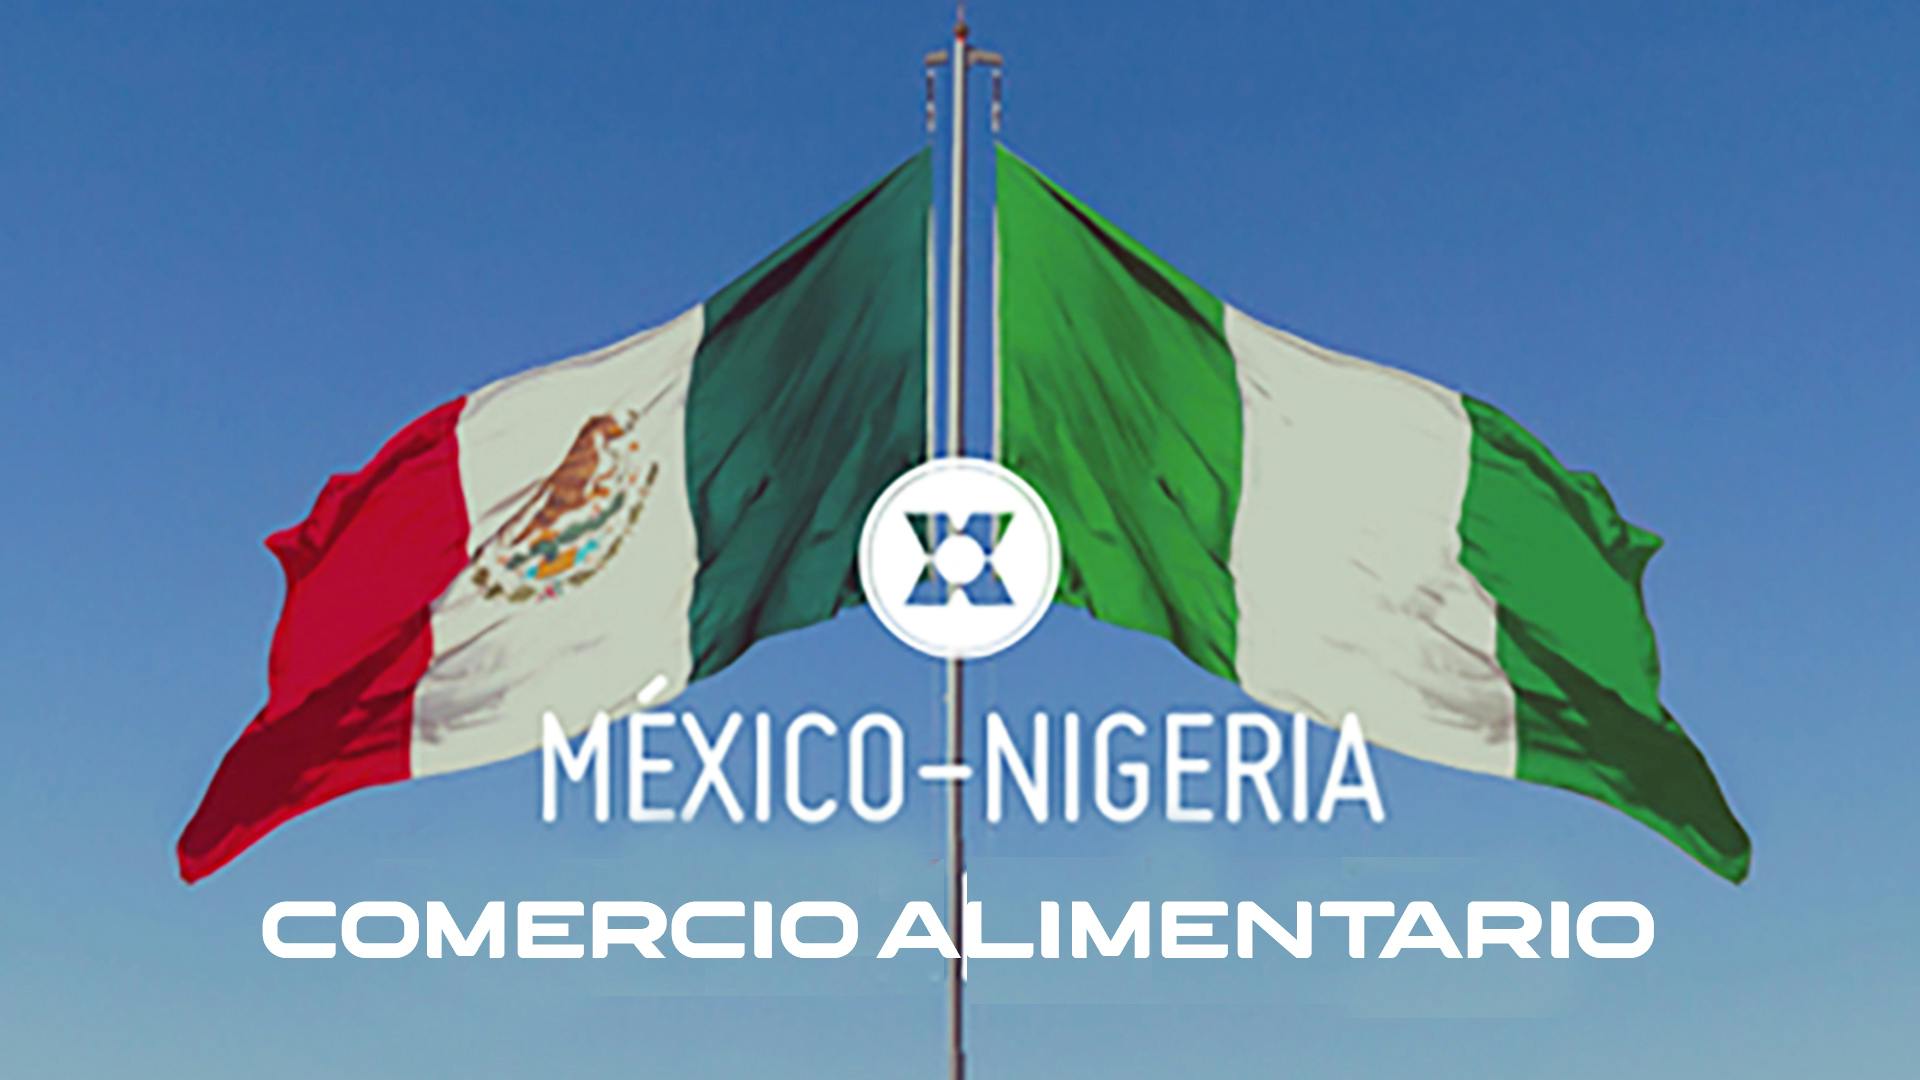 Intercambio de comercio alimentario entre México y Nigeria